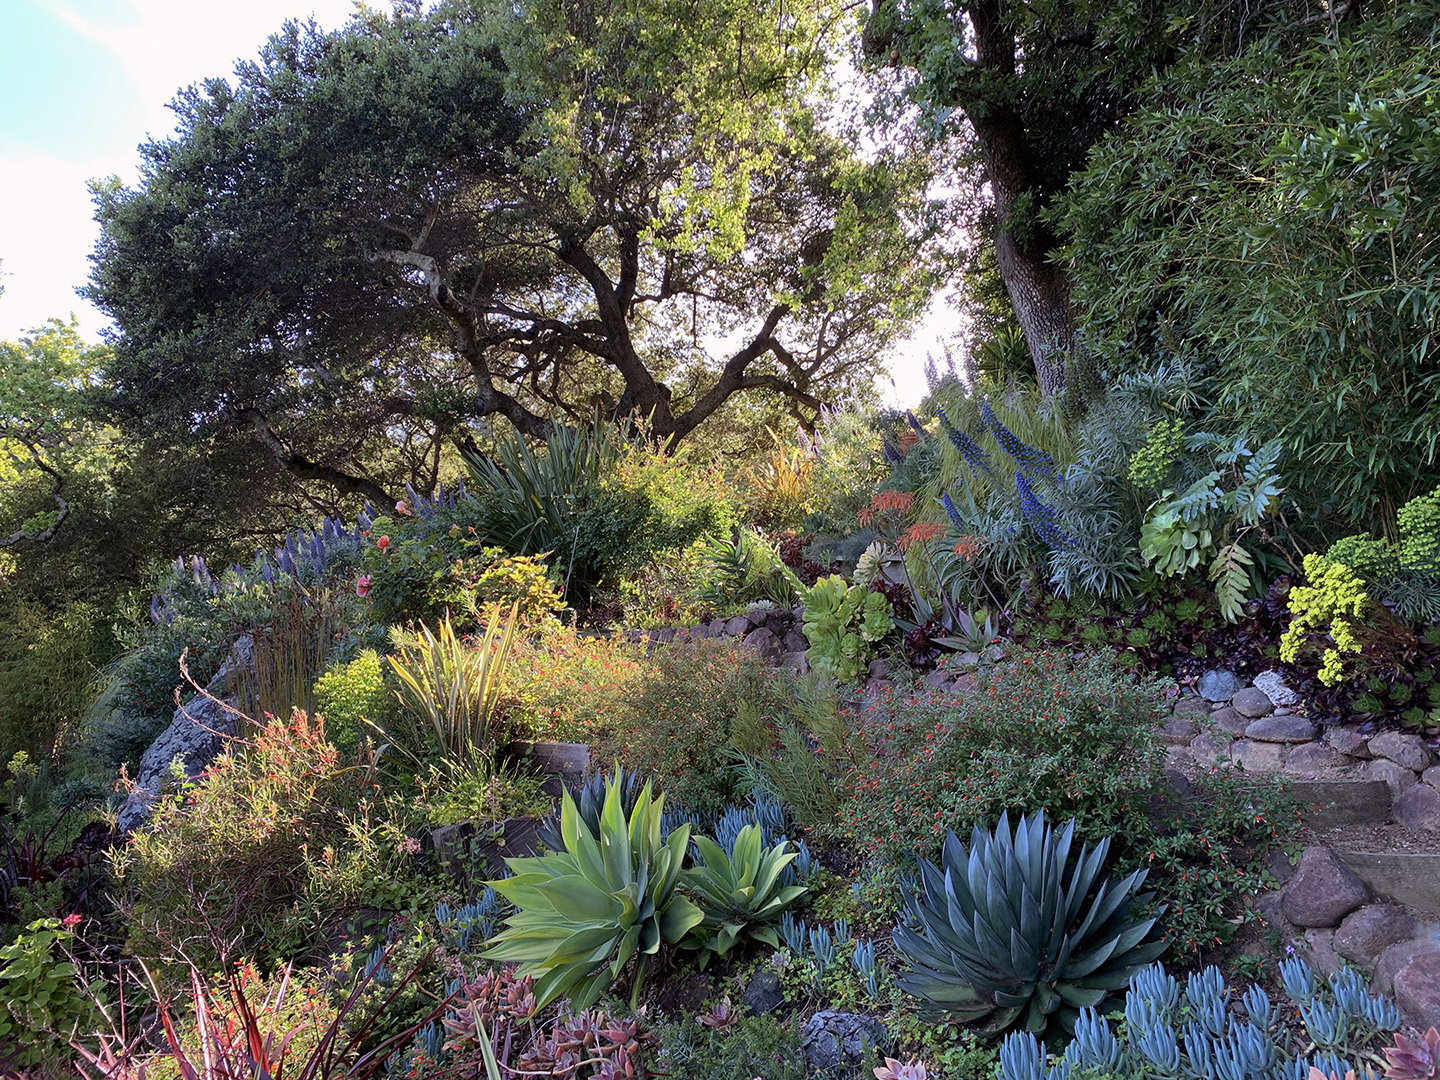 Dig Your Garden Landscape Design Home, Landscape Design Marin County